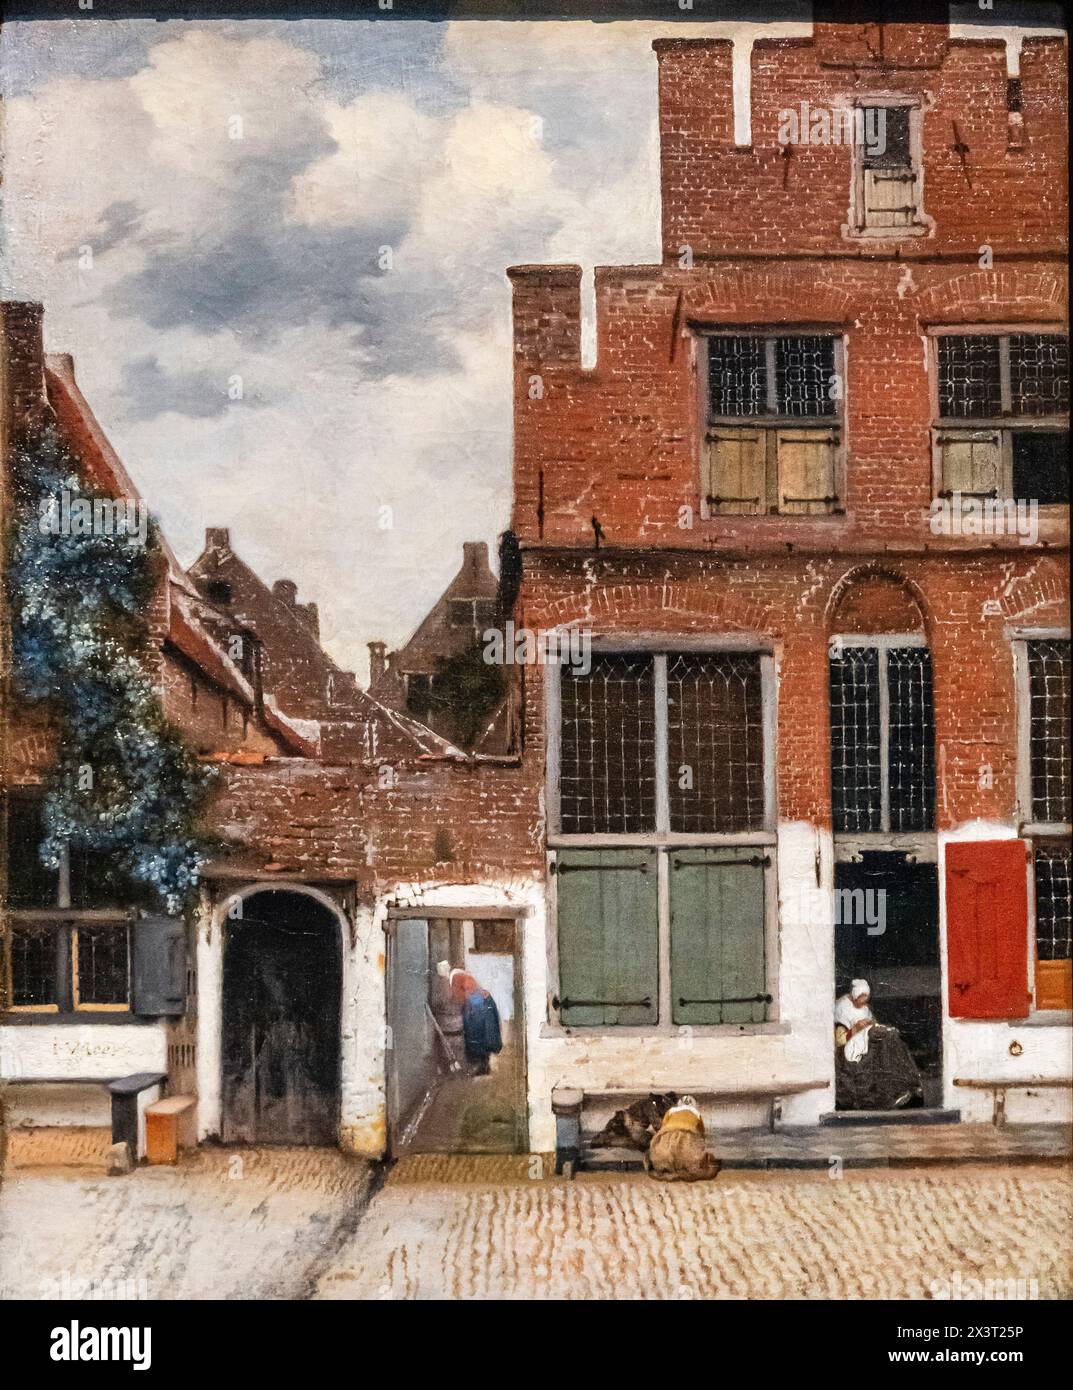 Vue de maisons à Delft, connue sous le nom de « la petite rue », Johannes Vermeer, huile sur toile, v. 1660, Amsterdam, pays-Bas Banque D'Images